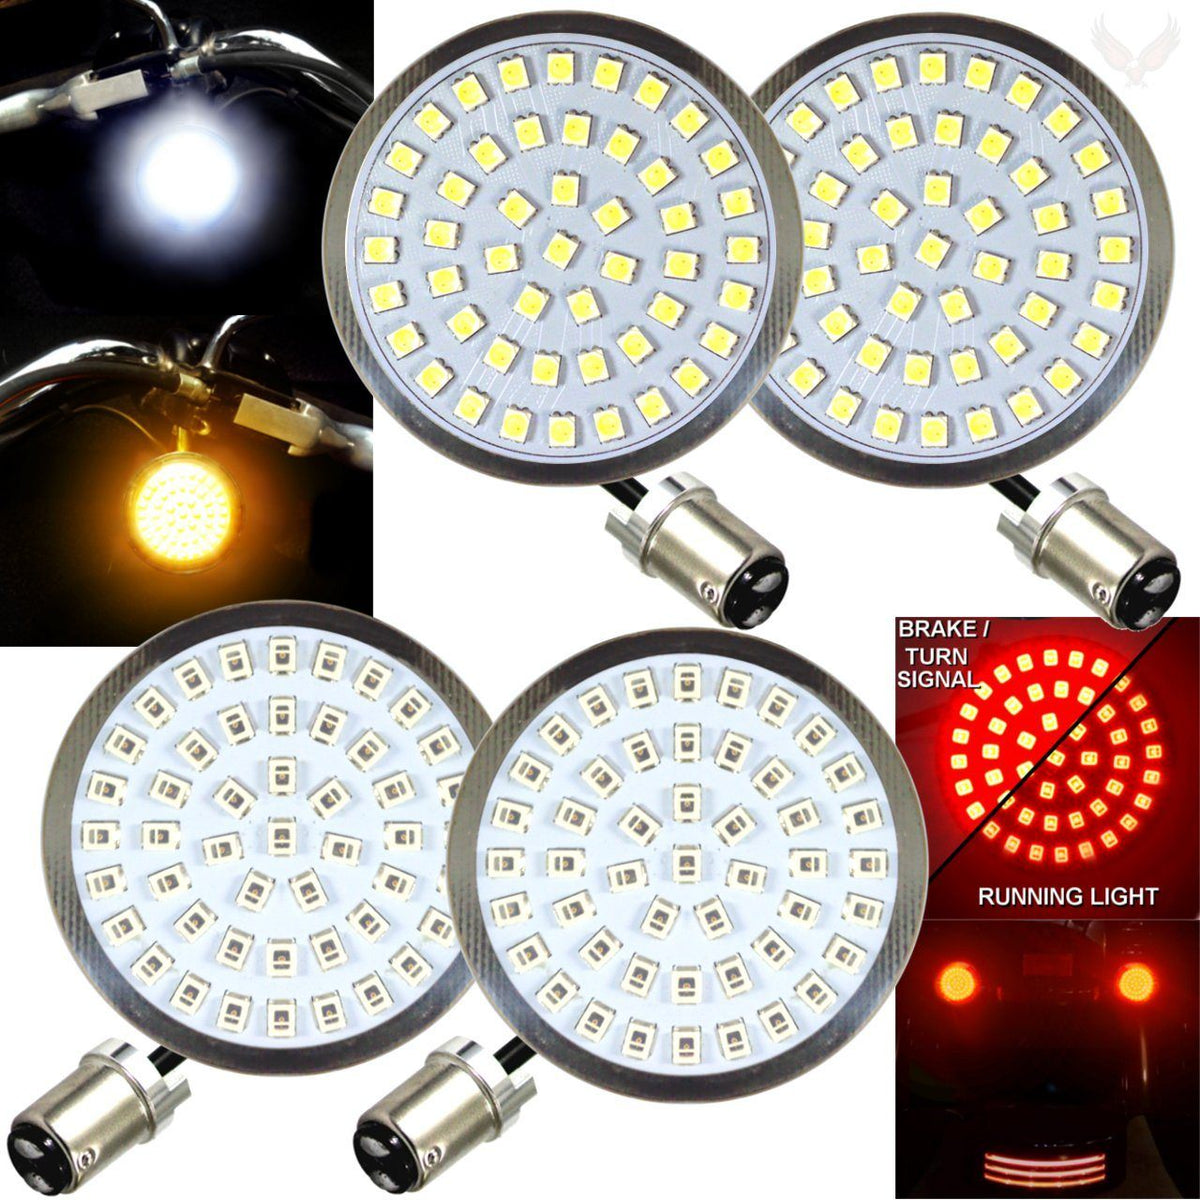 2” LED Turn Signal Kits - Eagle Lights LED Generation II Turn Signals (Front (1157) And Rear (1157) LED Turn Signal Kit